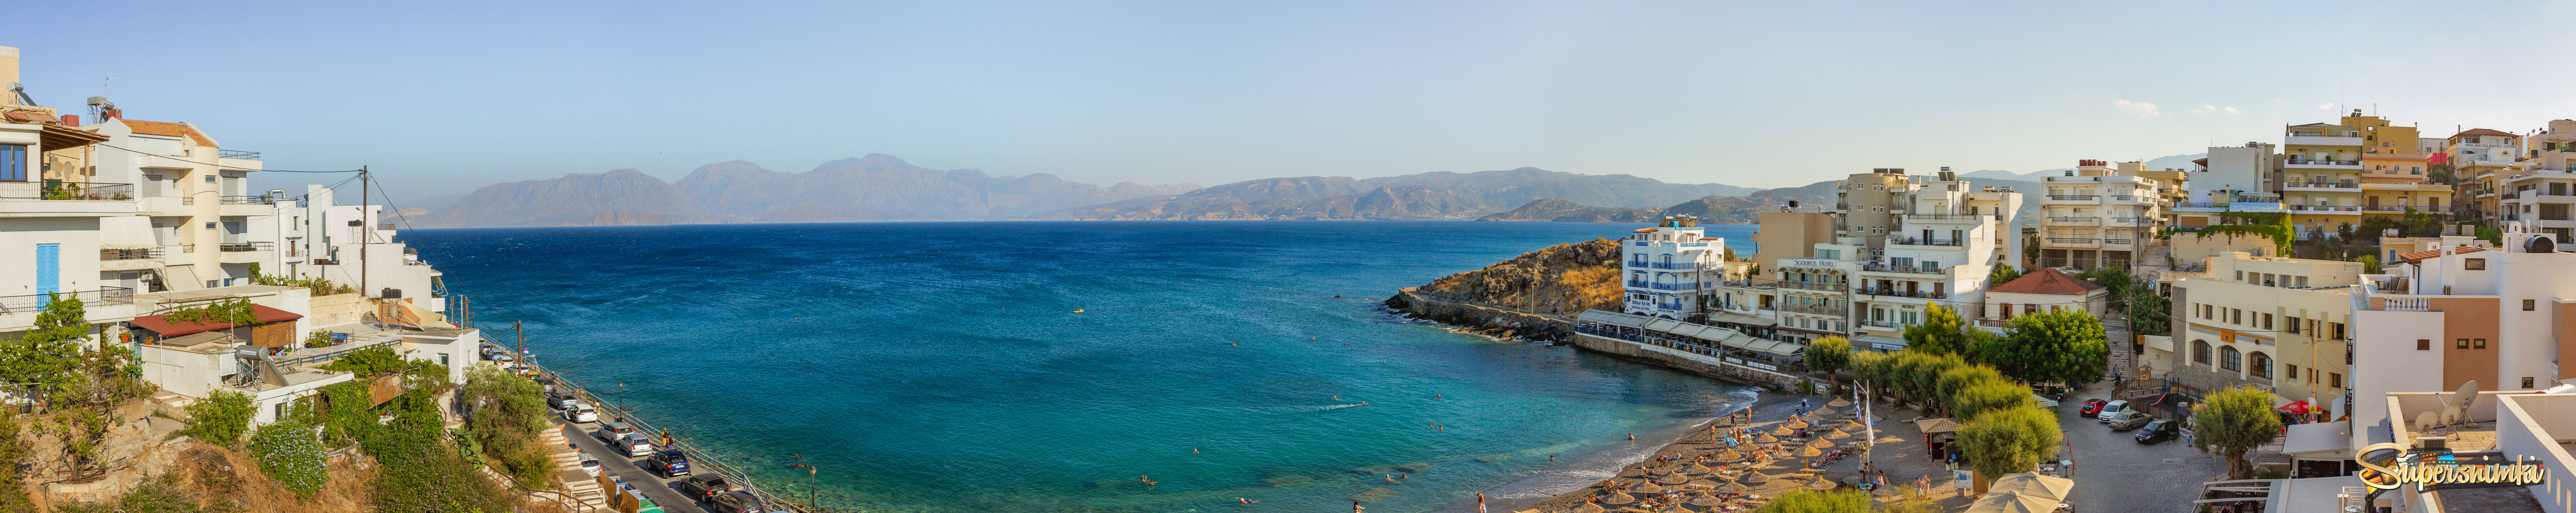 Крит. Агиос-Никлолаос. Пляж KITROPLATIA-общая панорама.